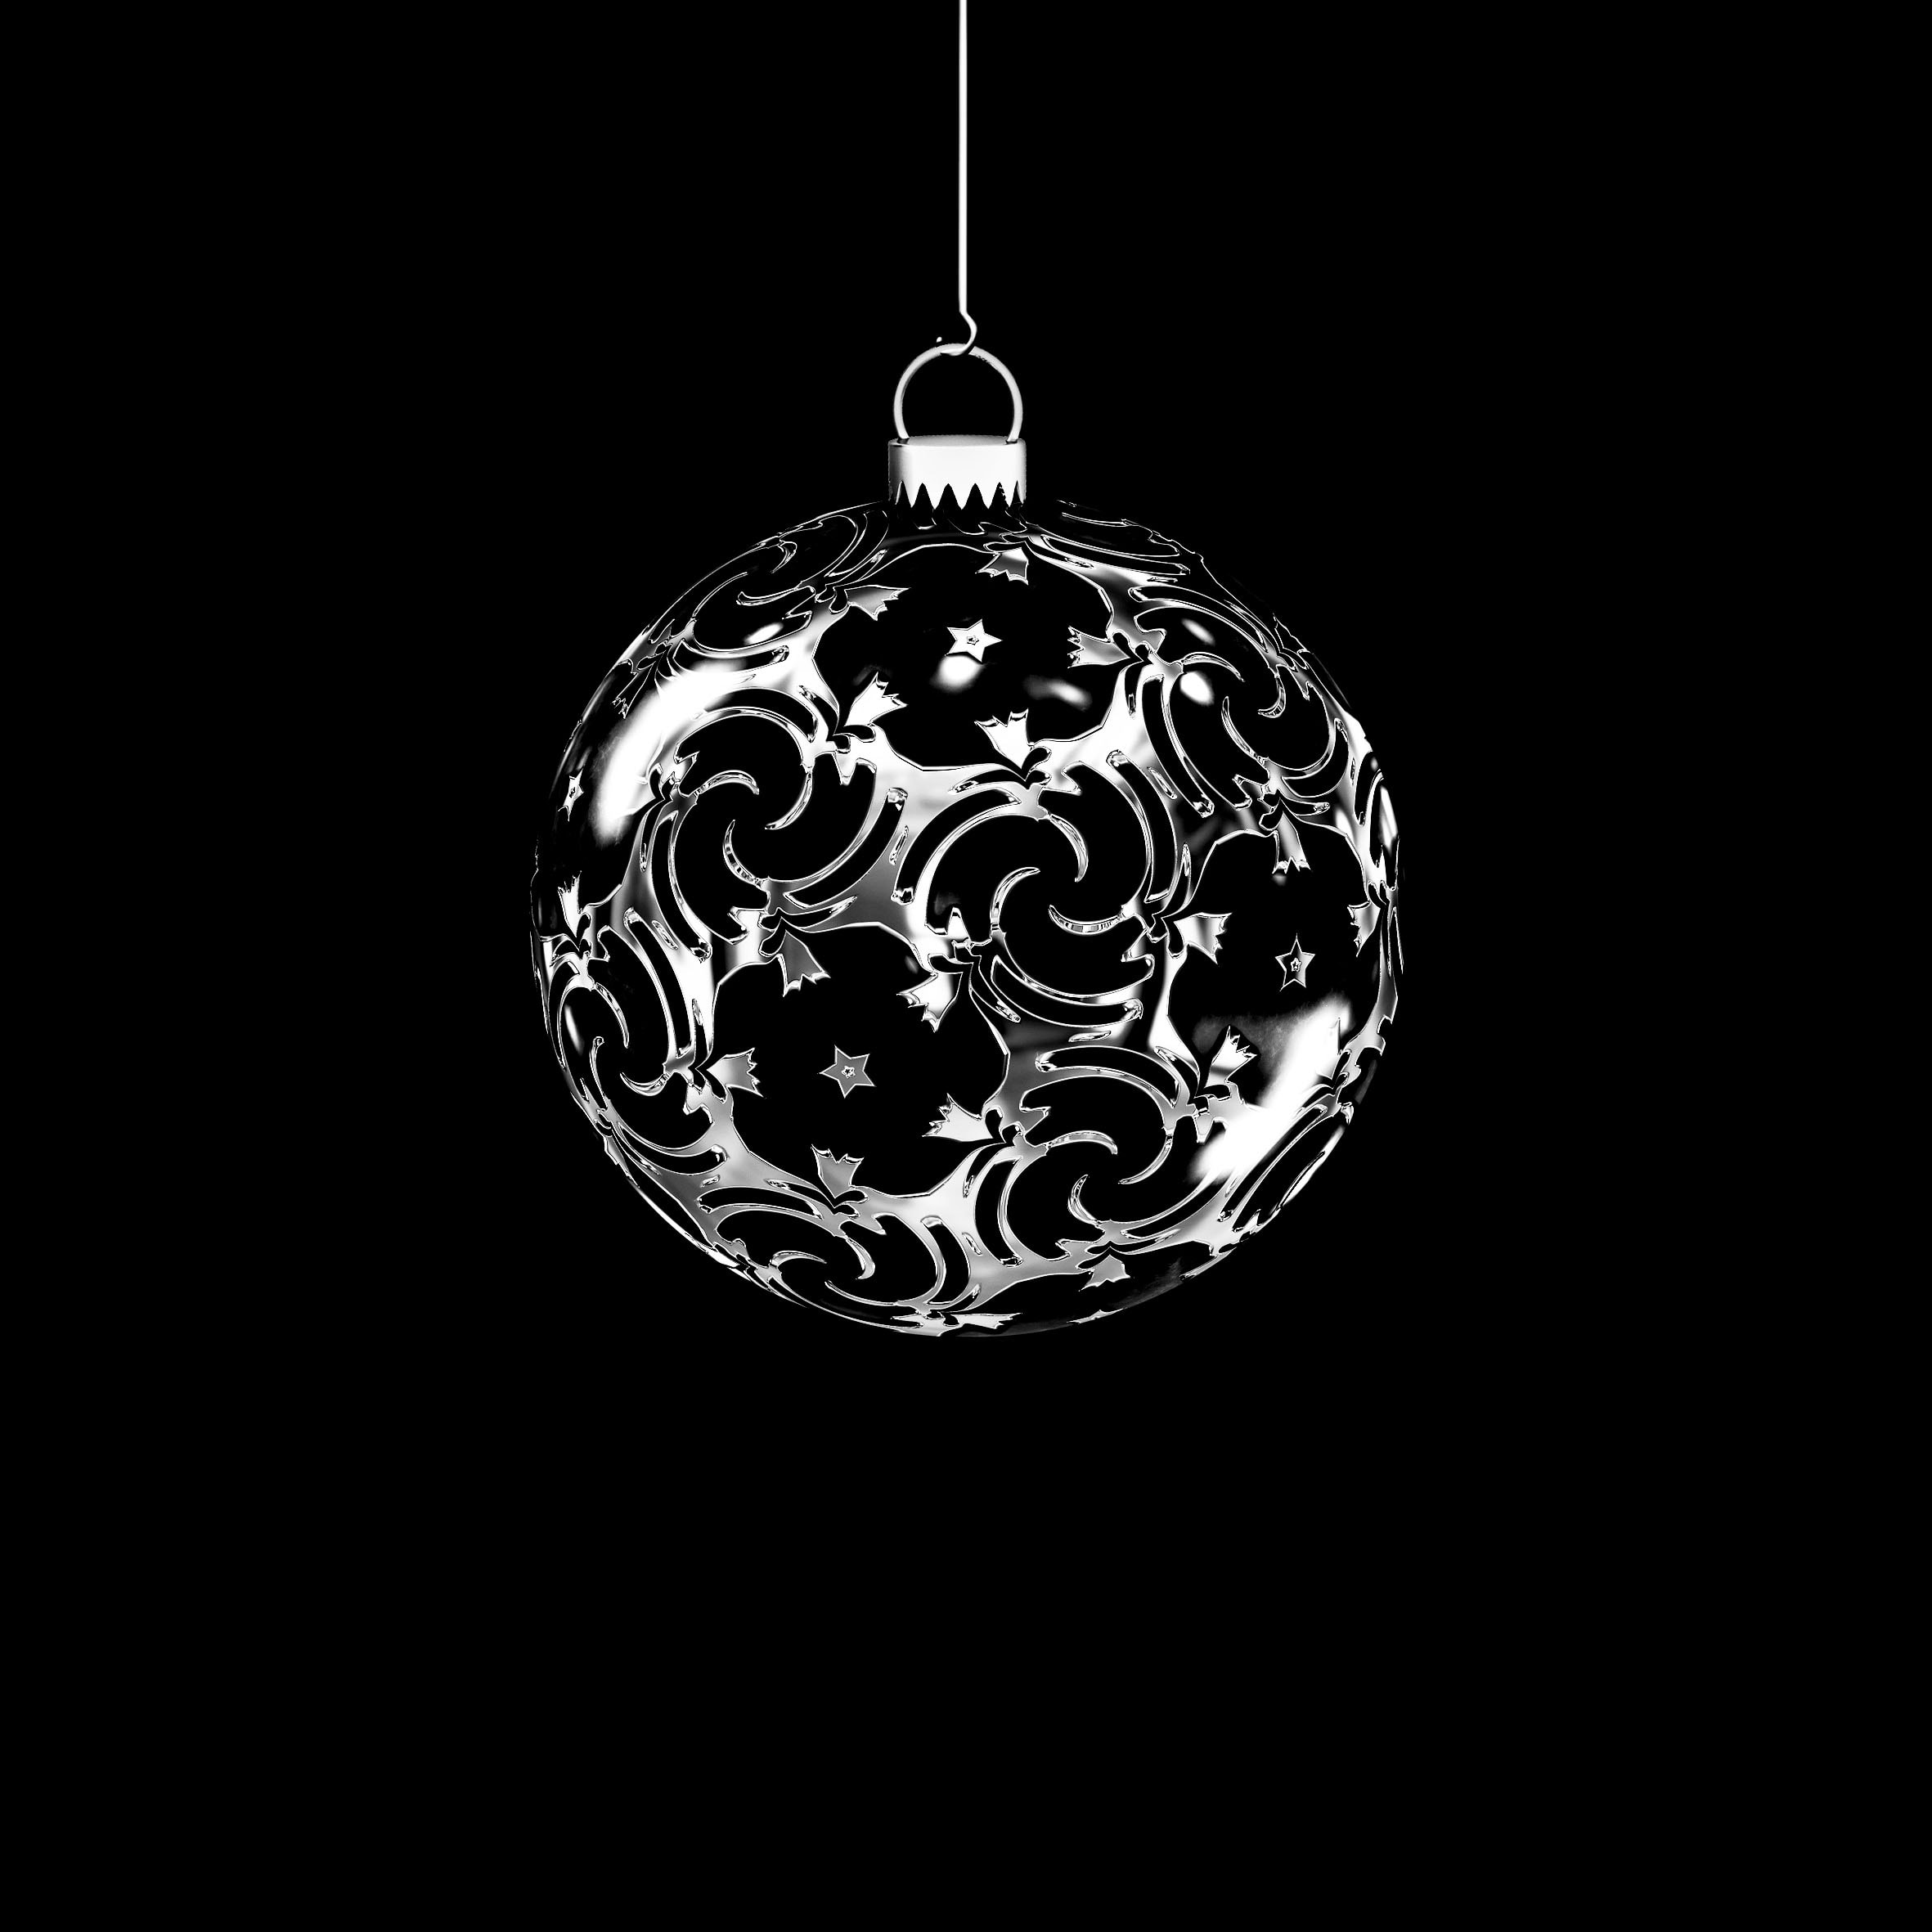 Gratis Afbeelding Metalen Zwart Wit Decoratie Kerst Sieraad Fantasie Opknoping Bol Sieraden Ronde